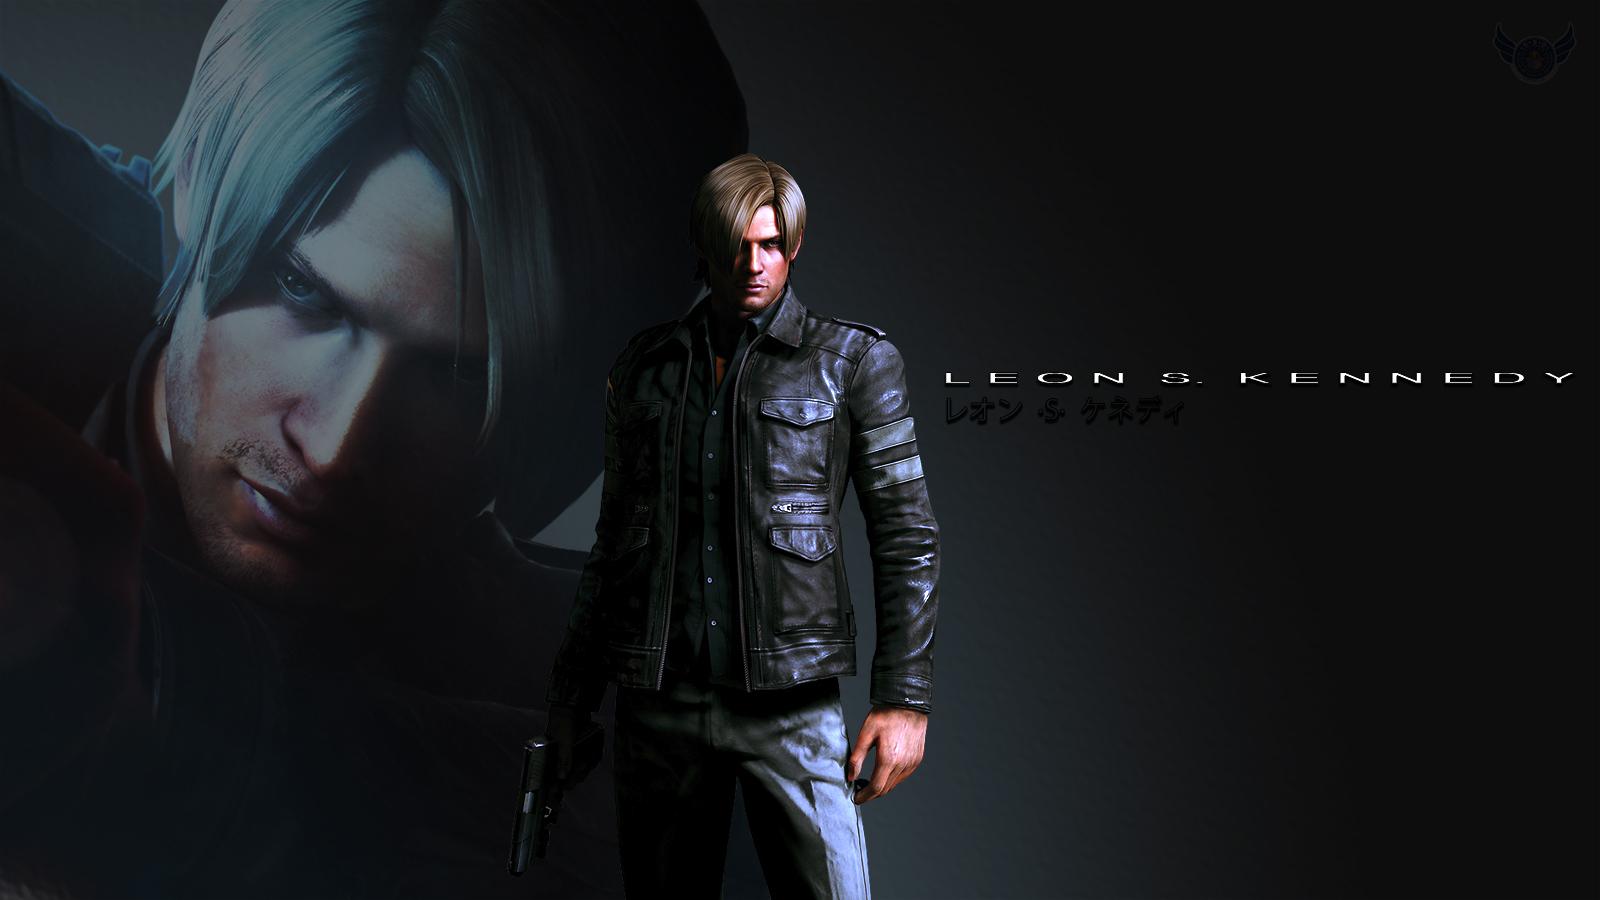 Leon Resident Evil 6 Wallpaper 1680x1050px